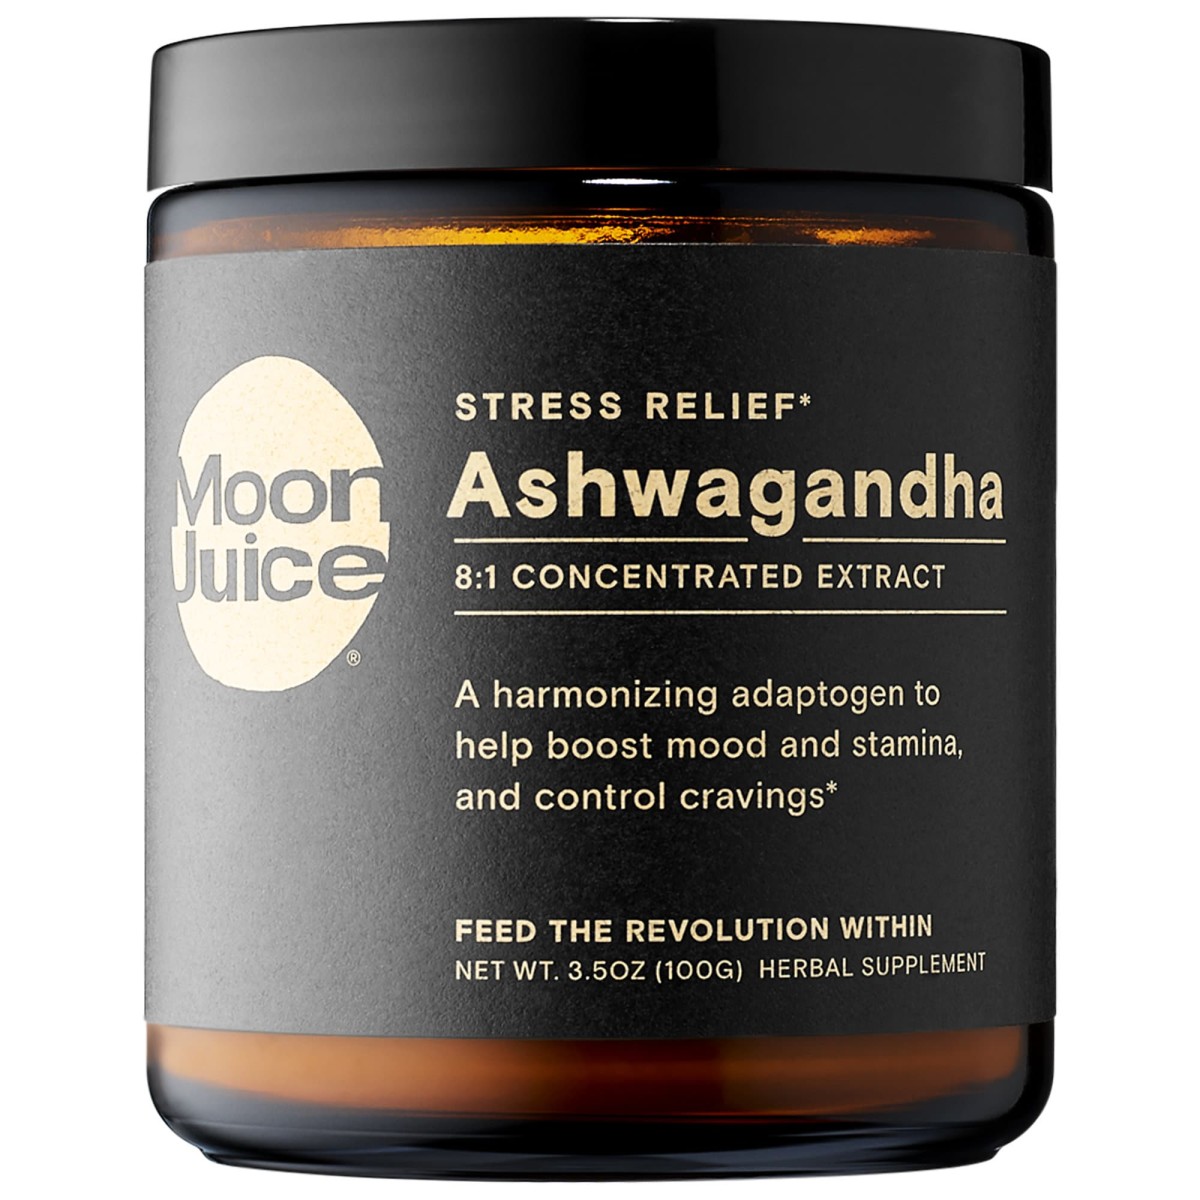 moon juice ashwagandha